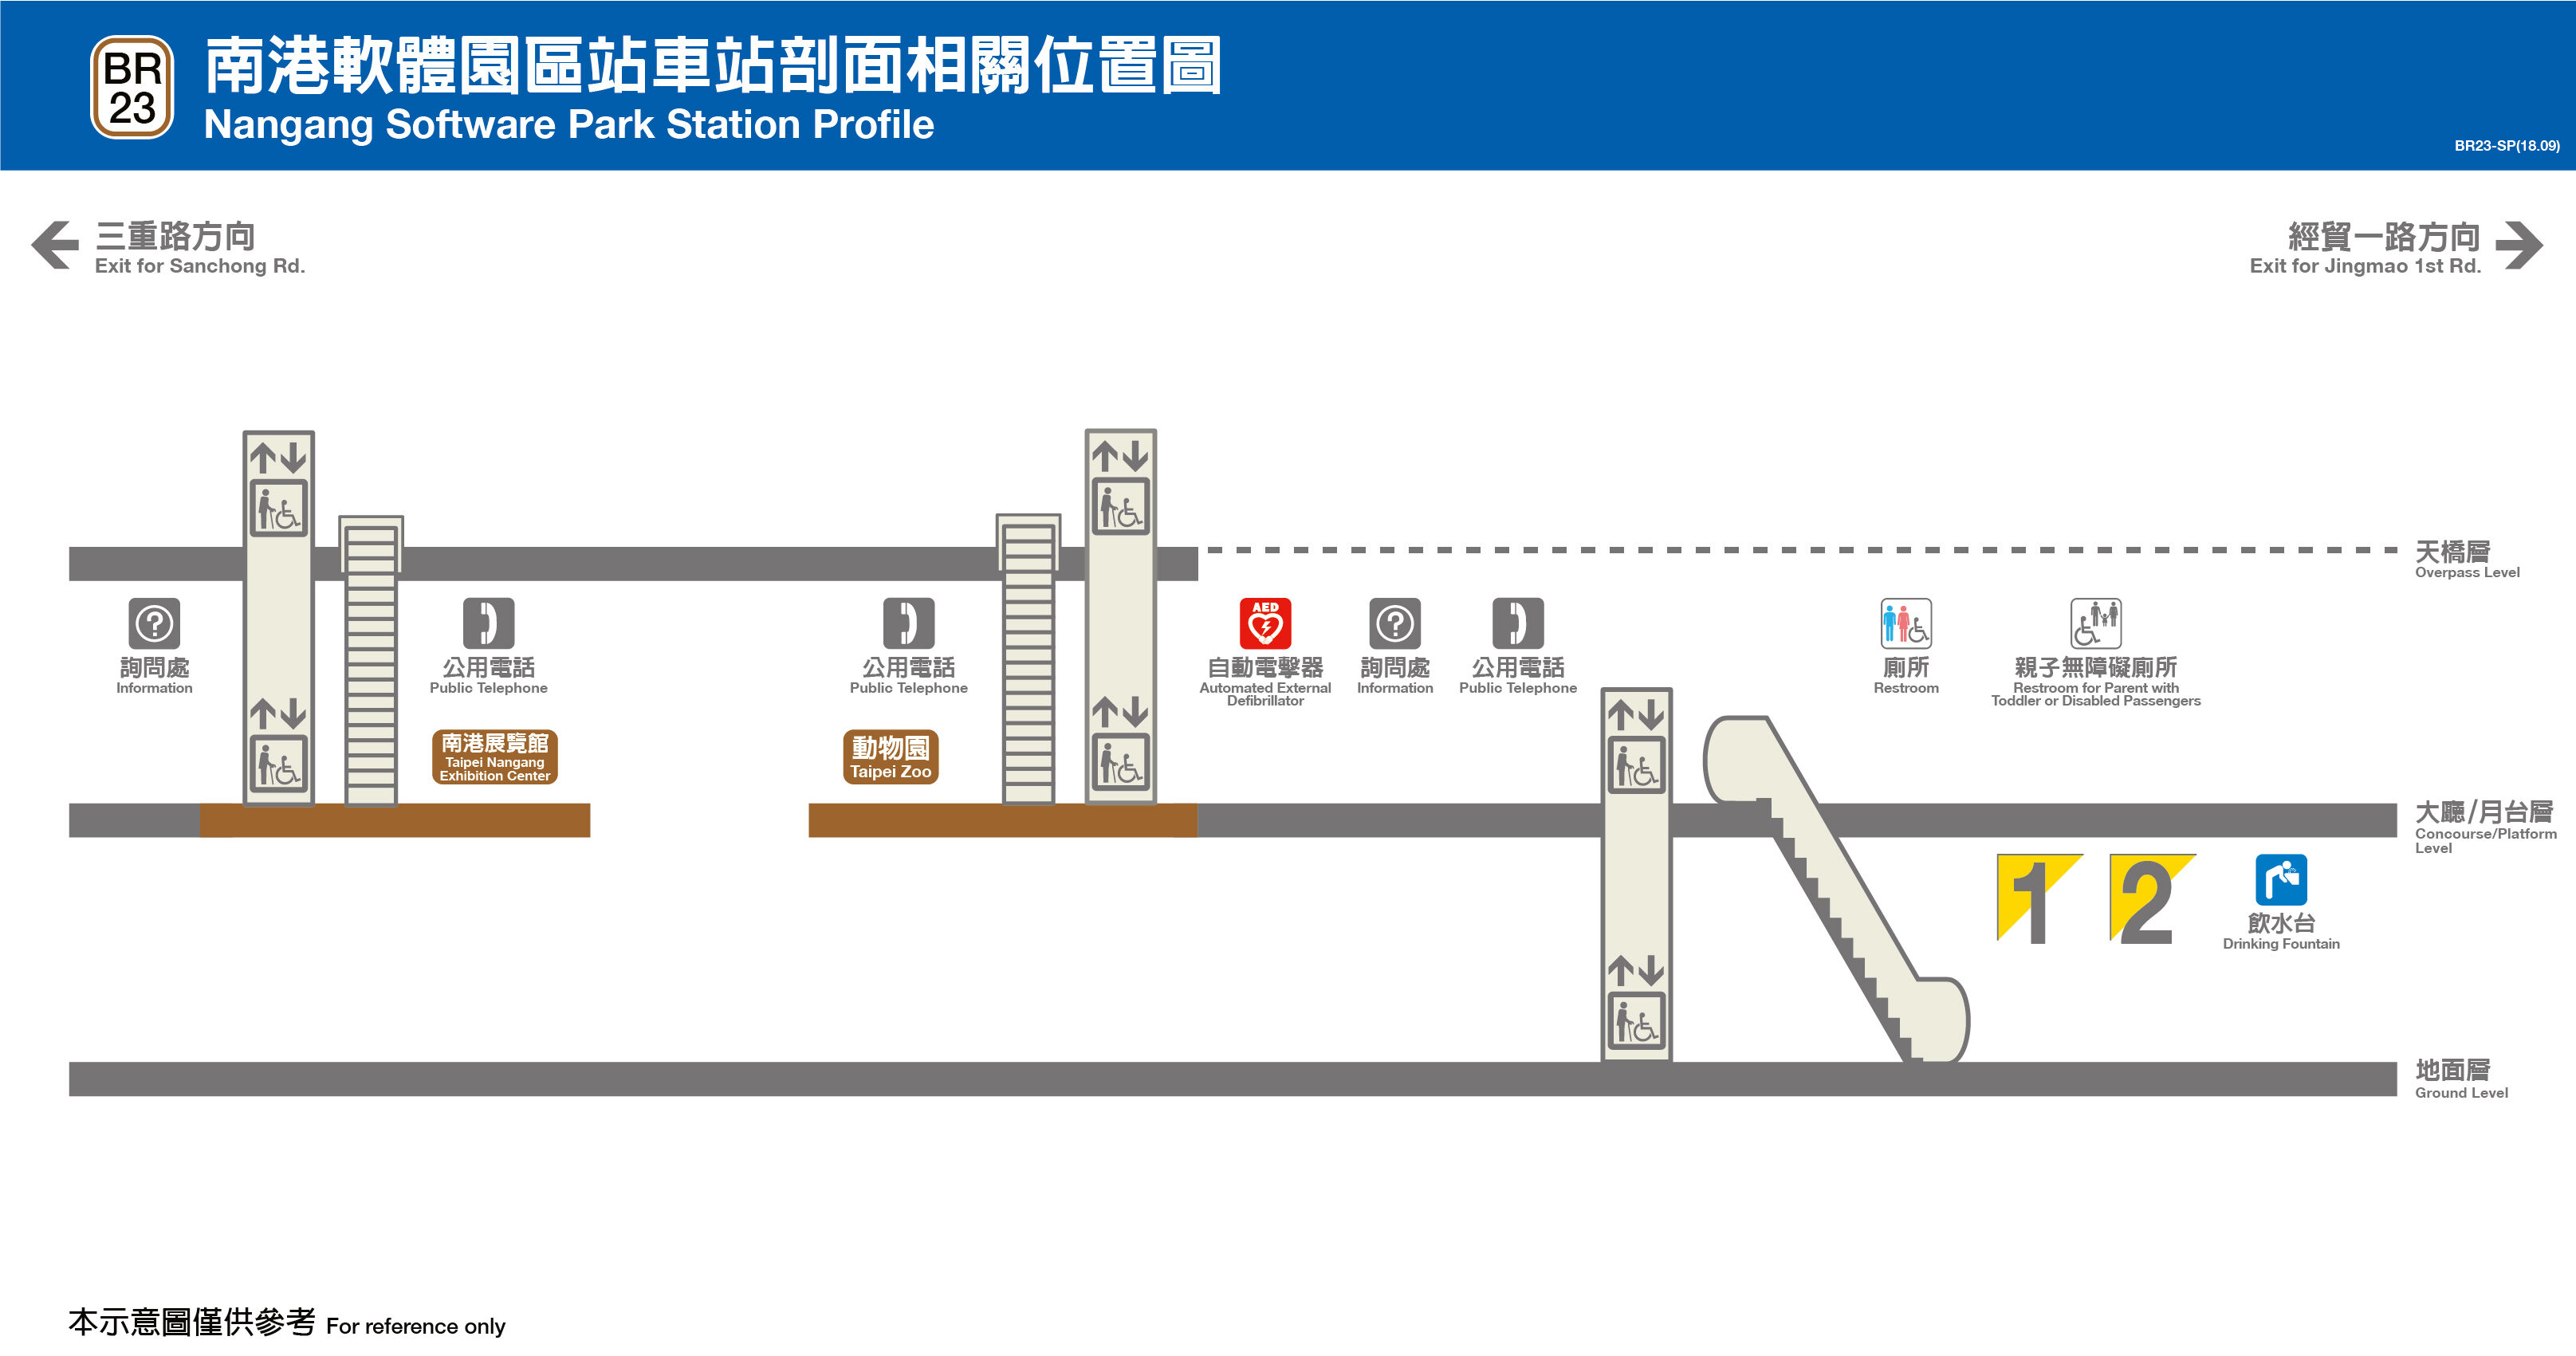 台北捷運南港軟體園區站平面圖剖面圖